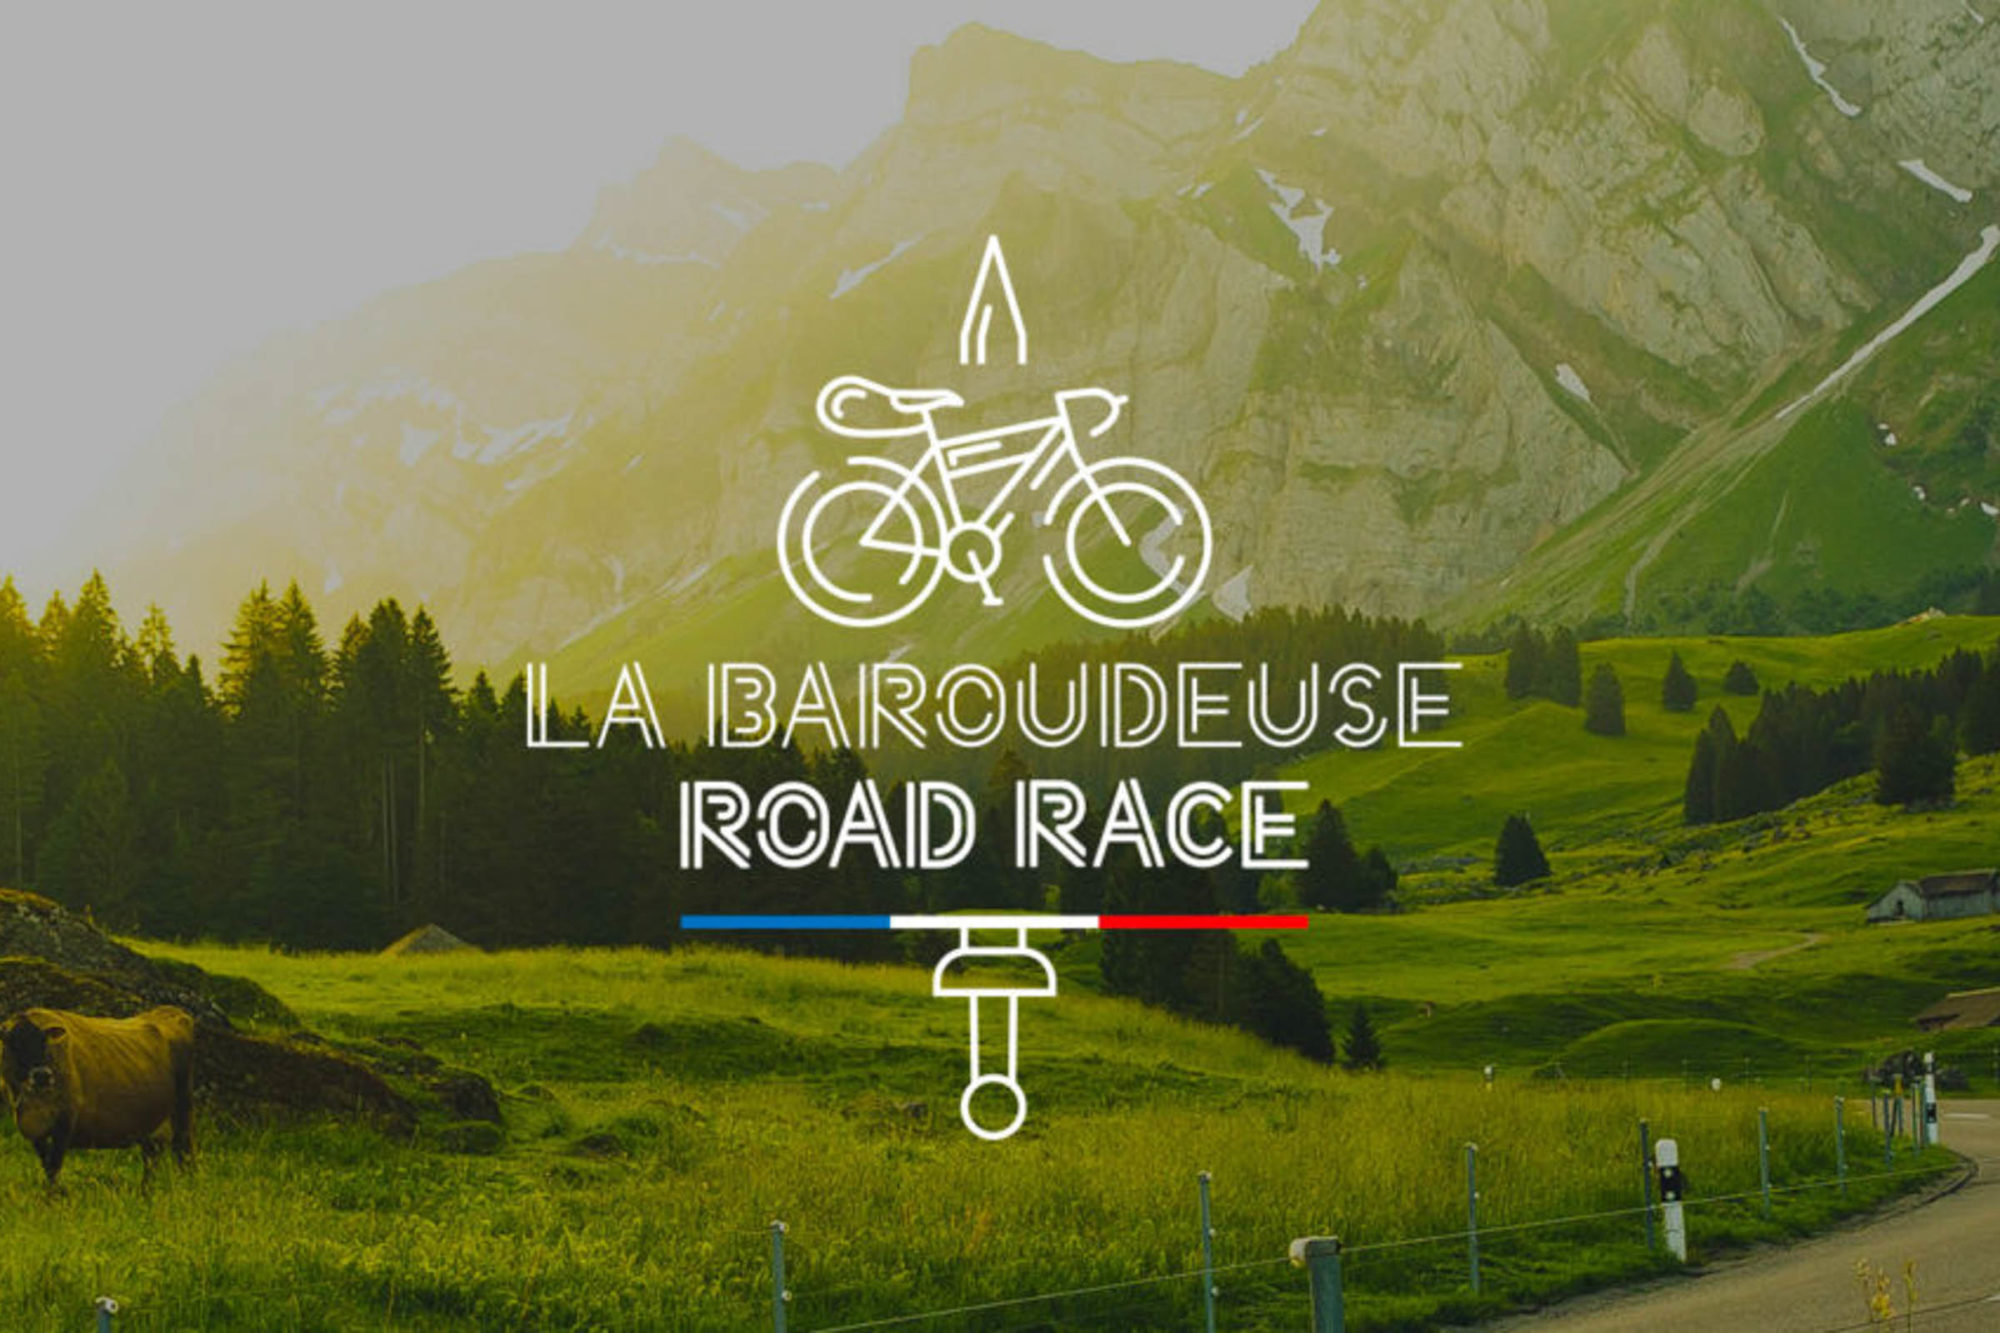 La Baroudeuse Road Race Event